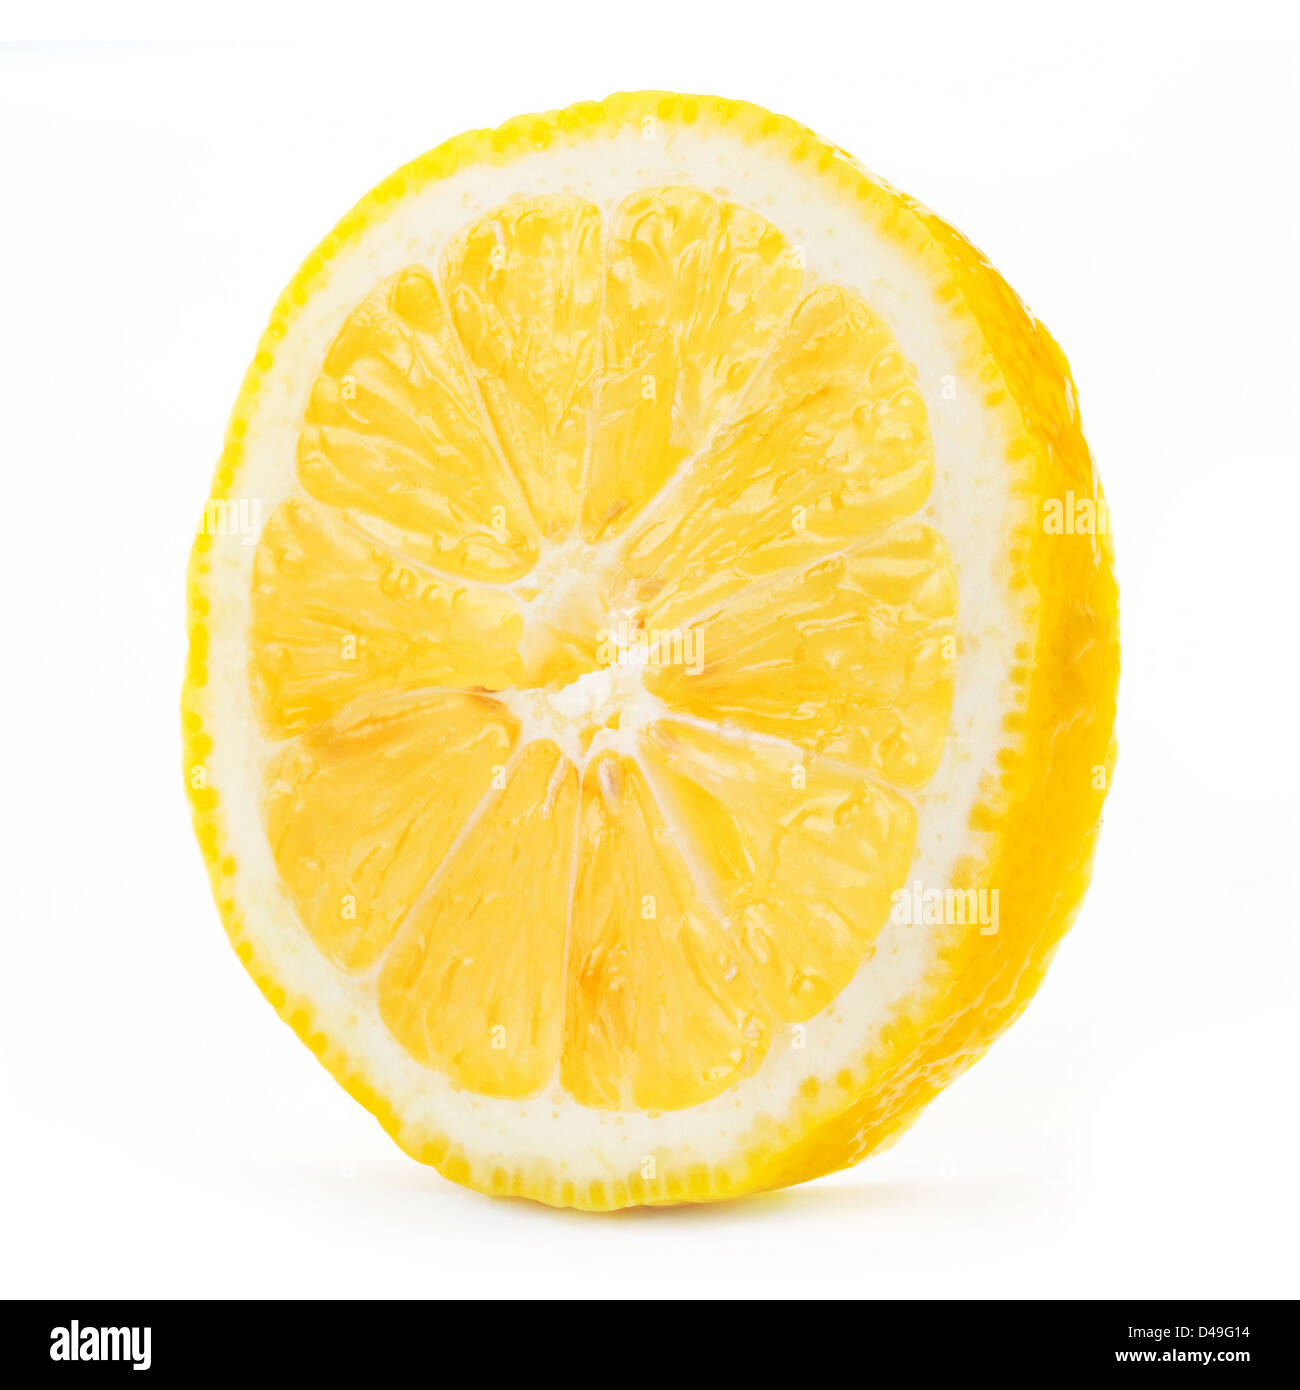 Lemon tropical fruit isolated on white Stock Photo